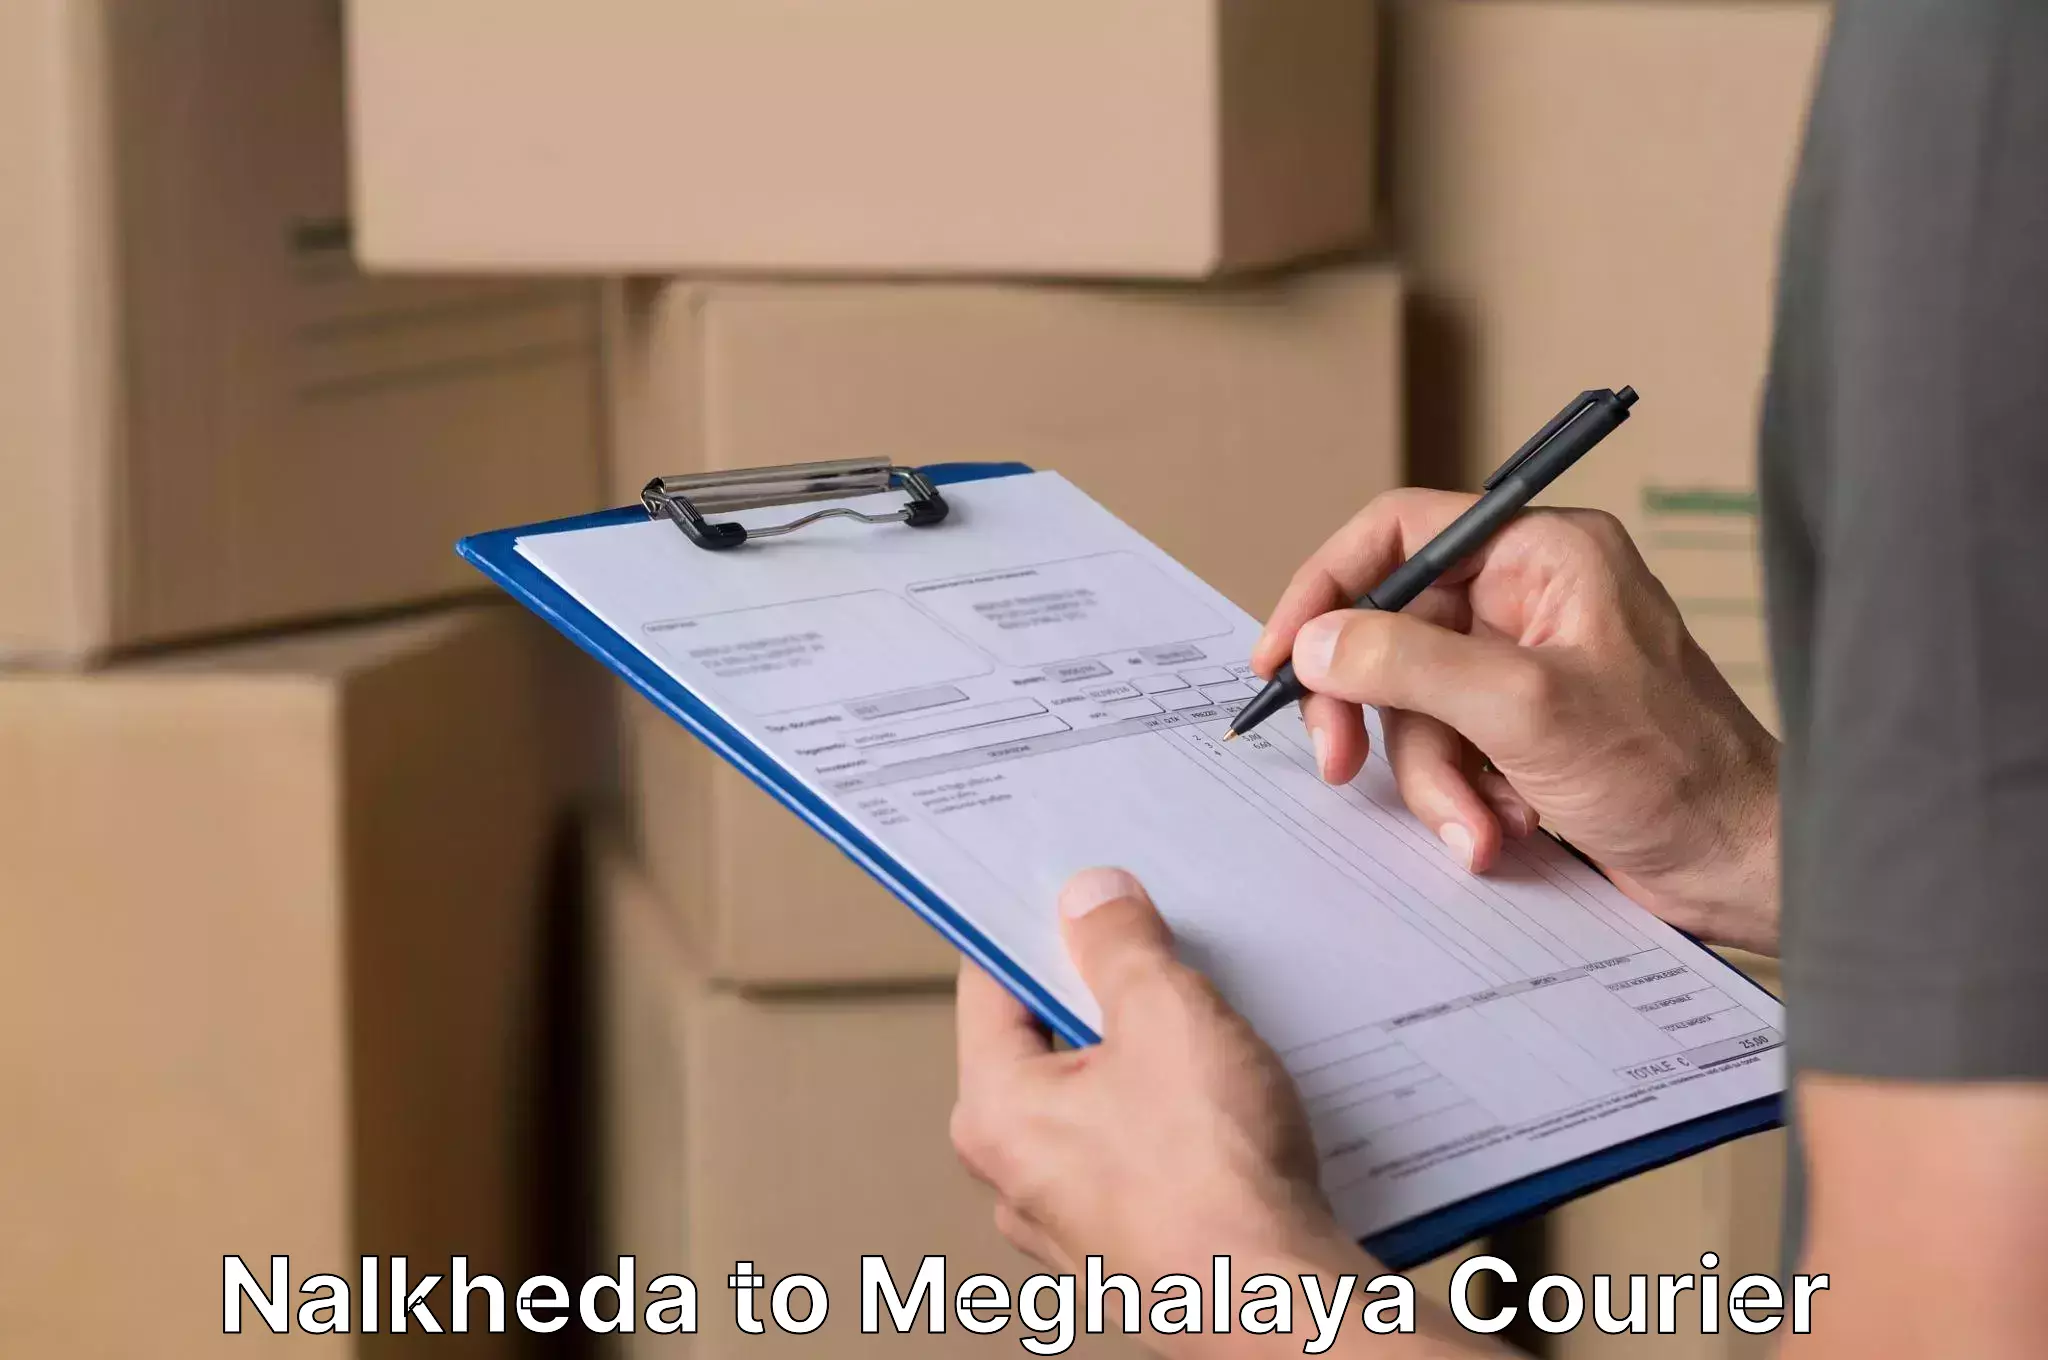 Skilled furniture transport in Nalkheda to Meghalaya